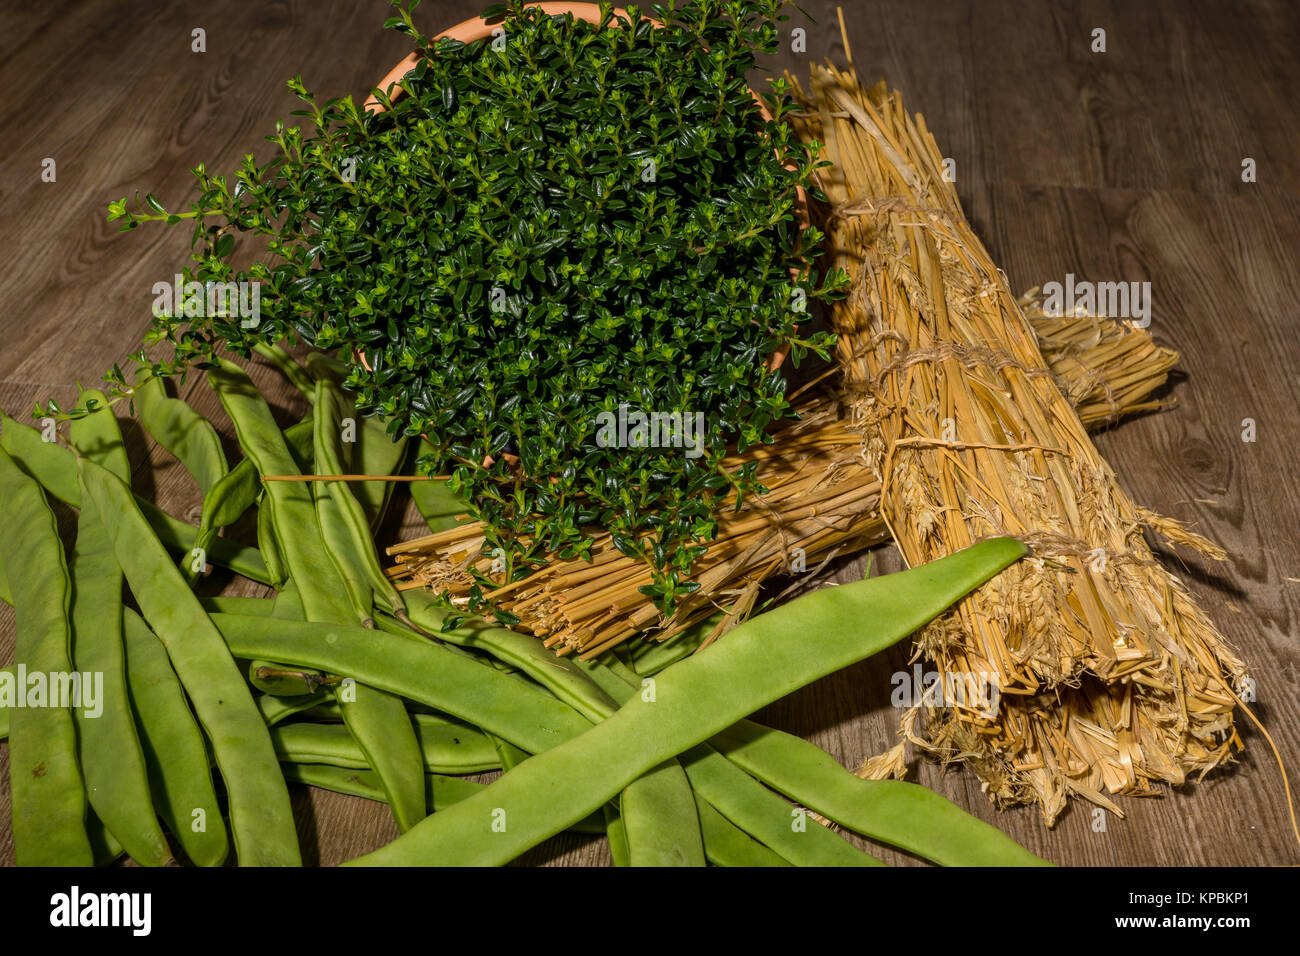 Grüne Bohnen mit einer Bohnenkrautpflanze im Topf Foto Stock